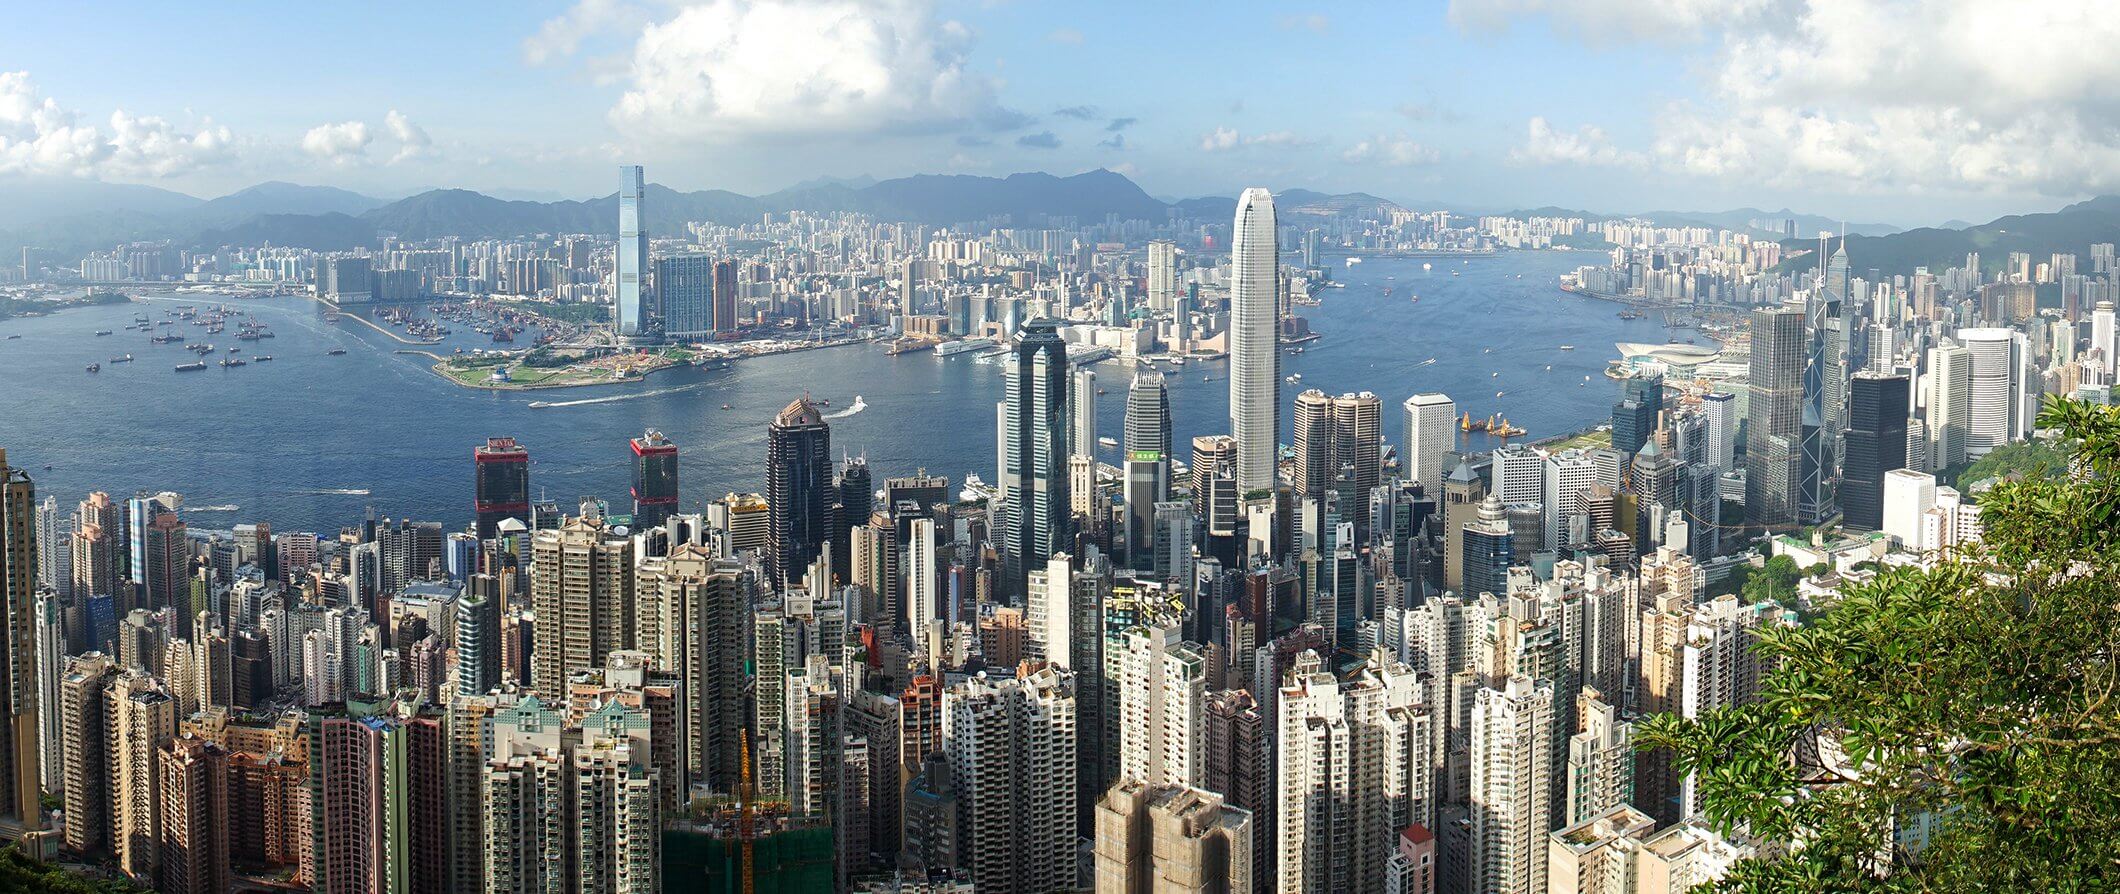 7 Hong Kong Budget Travel Tips To Travel Hong Kong For Cheap